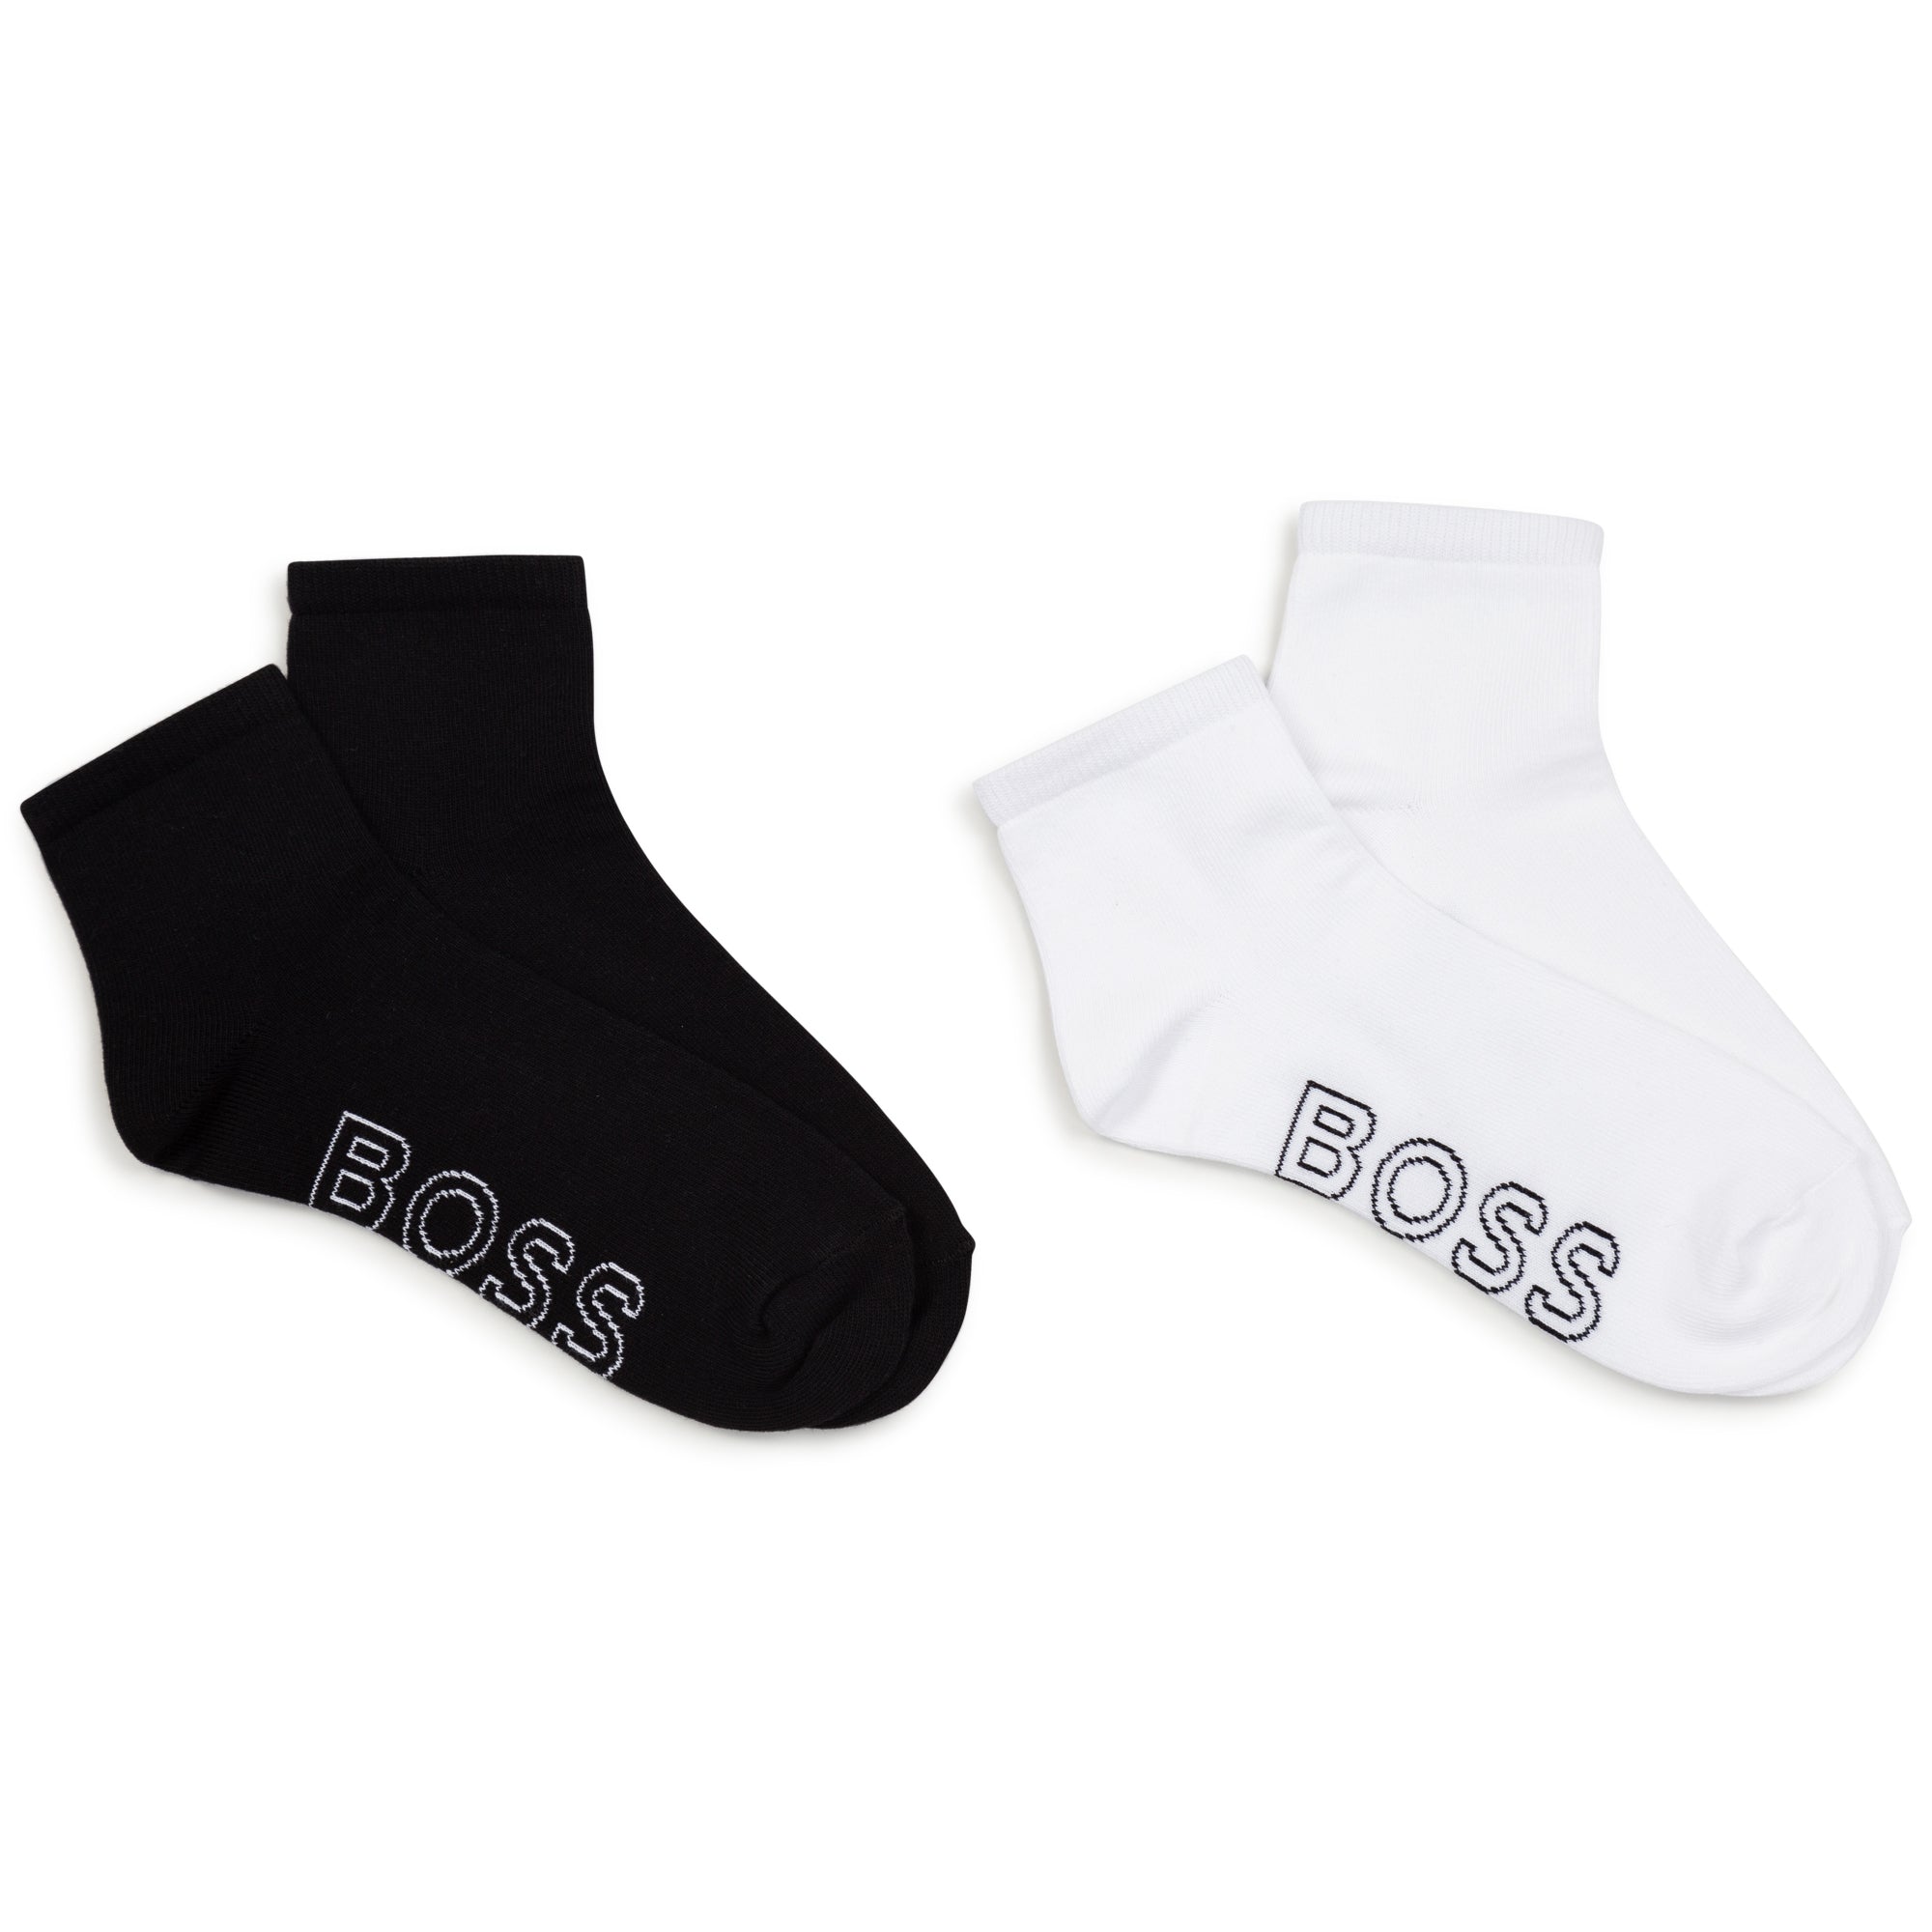 Boys & Girls Black & White Cotton Socks